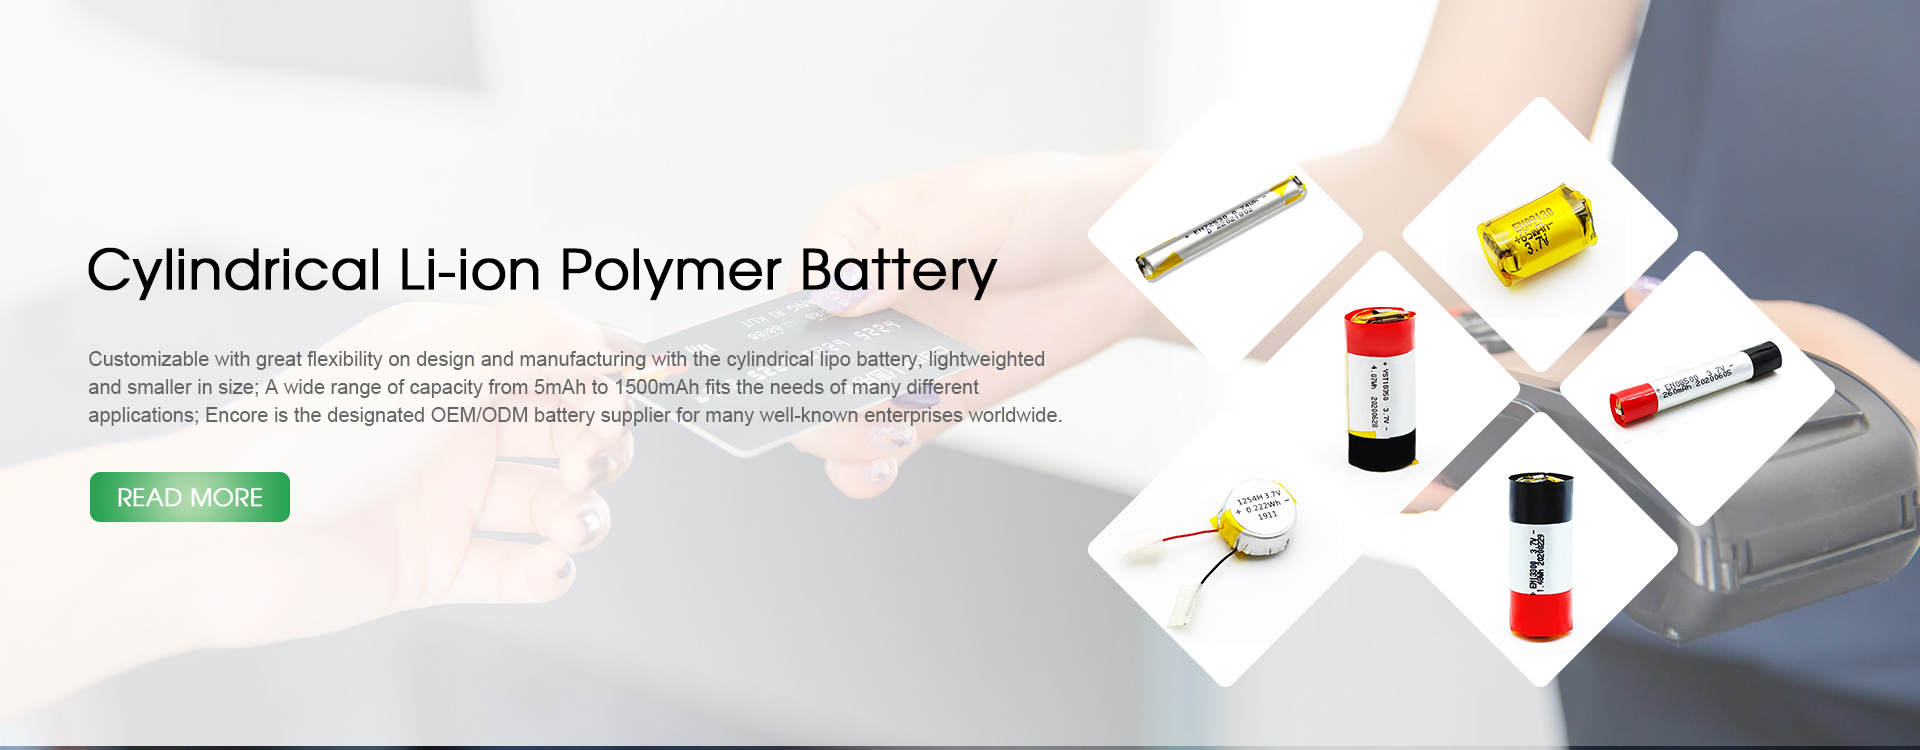 Li Polymer Cylindrical Battery Tillverkare